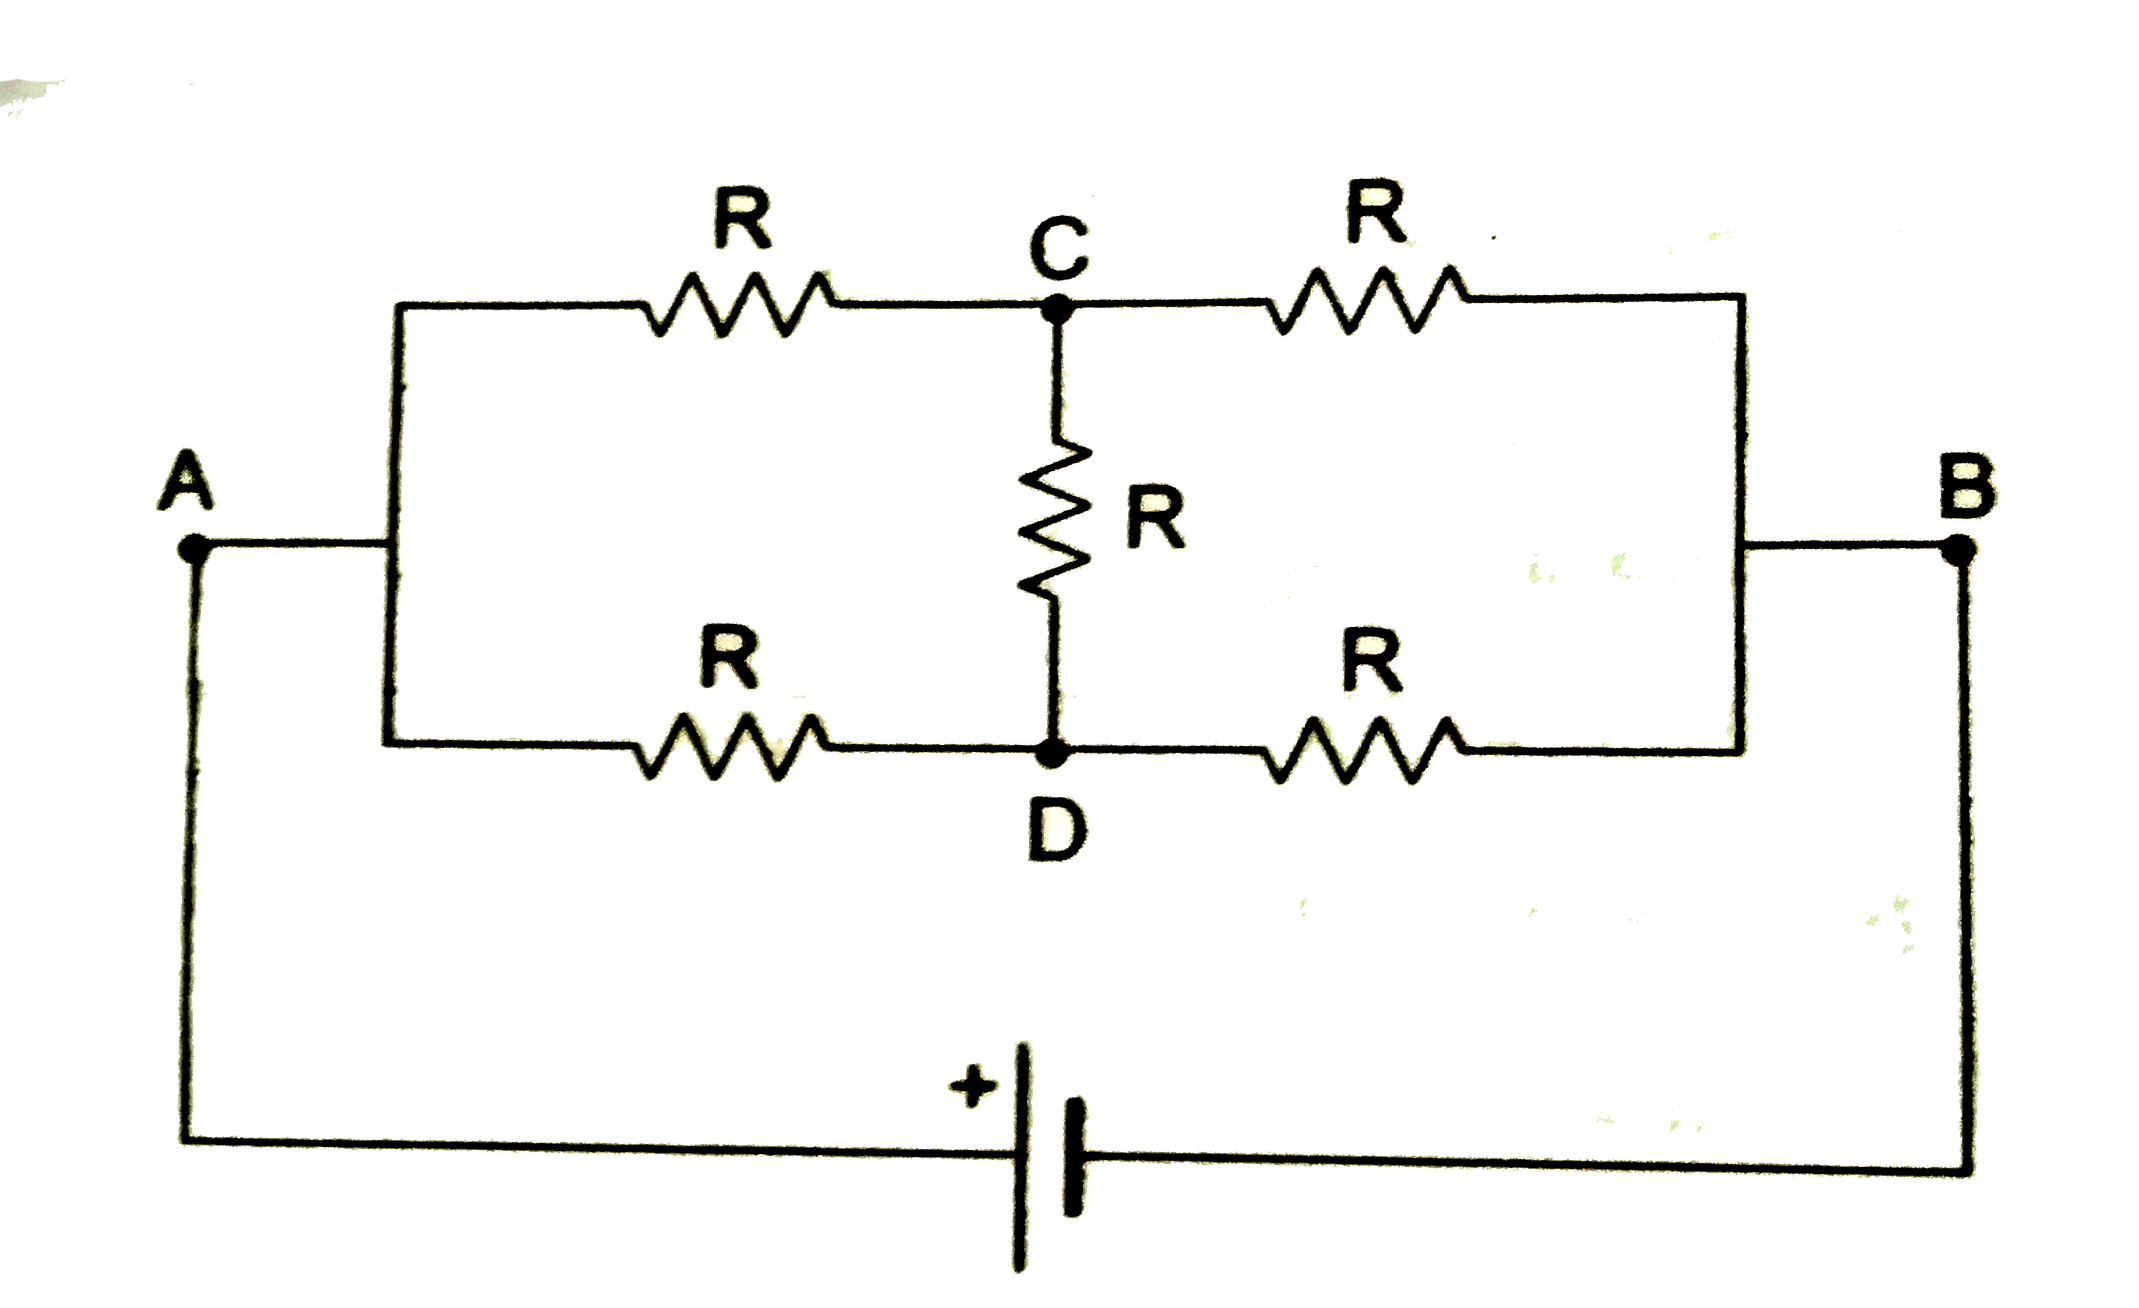 कथन  1 : चित्र  में  बिंदु  A तथा B  के बीच तुल्य प्रतिरोध R है ।    कथन 2 : हीटस्टोन ब्रिज के संतुलन की शर्त के अनुशार , बिंदु C तथा D के विभव समान है ।